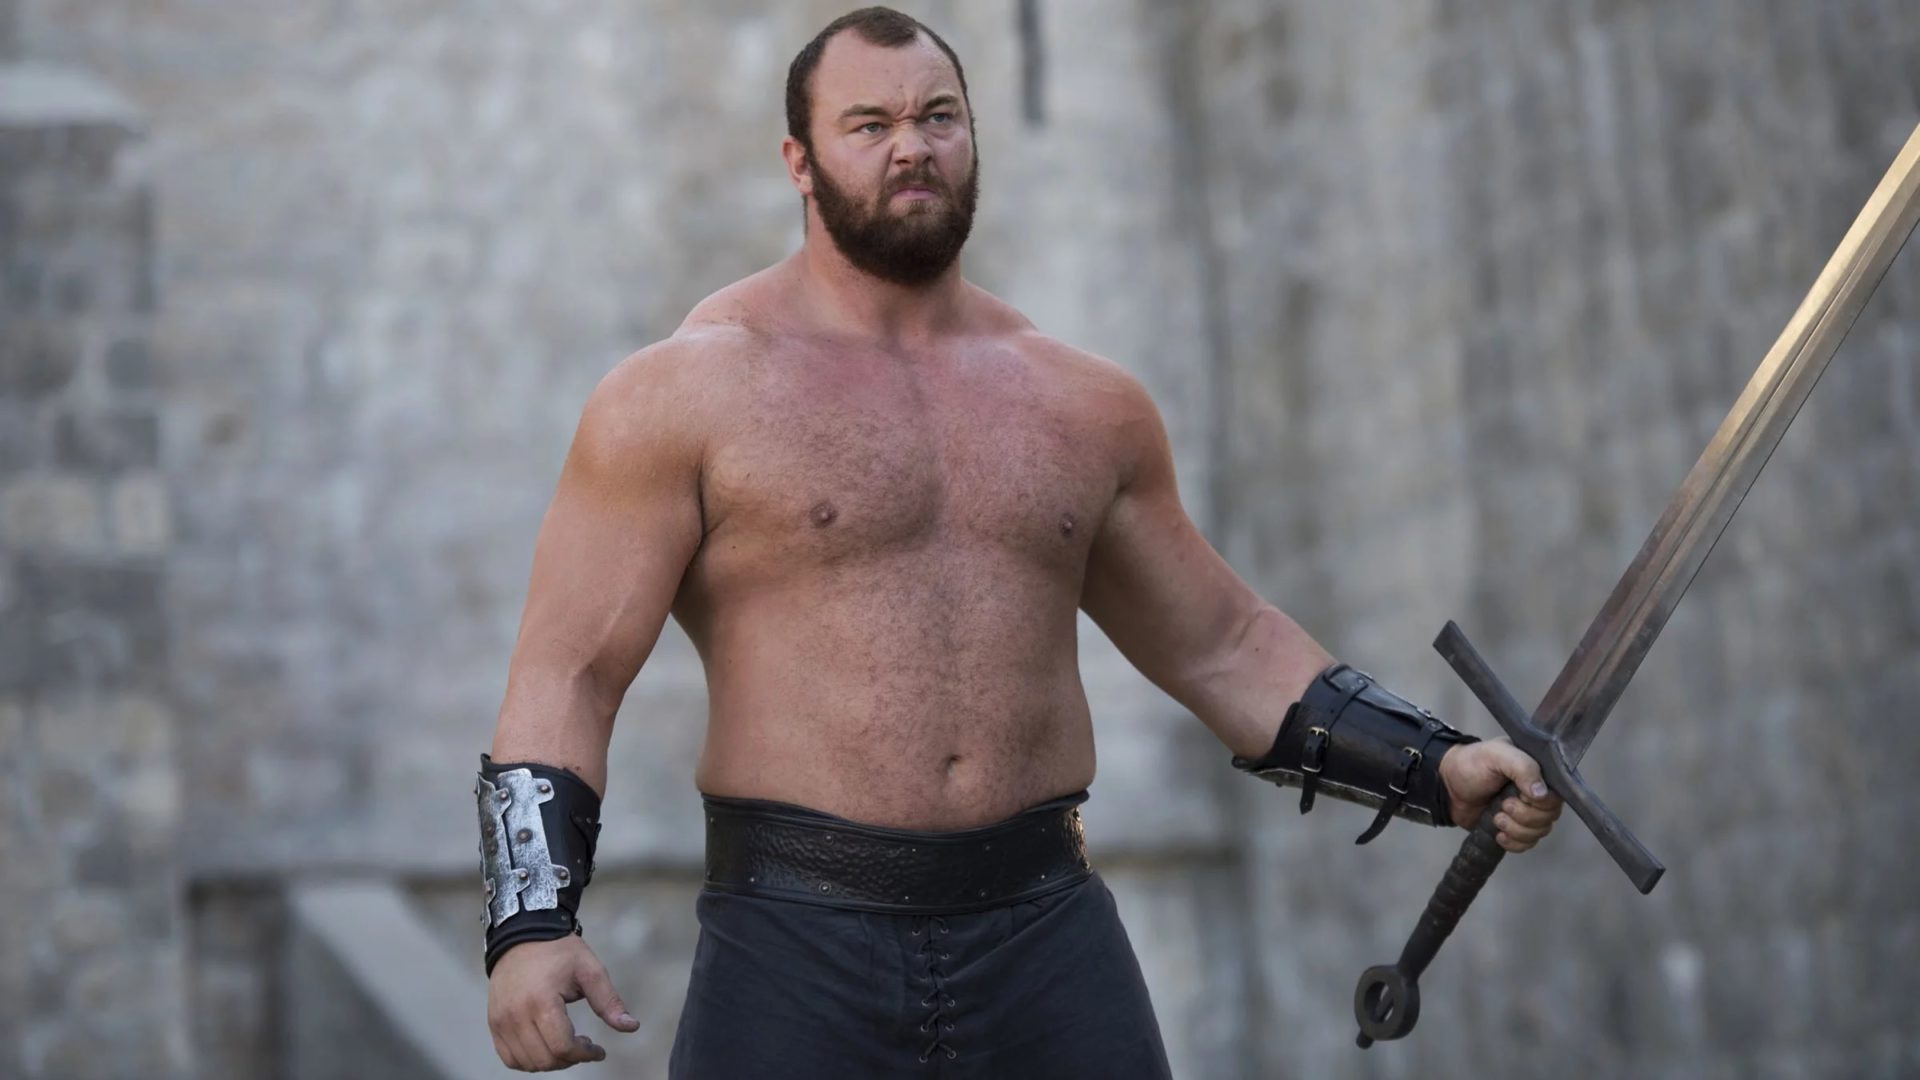 Game of Thrones Mountain rompe un récord mundial de levantamiento de pesas.  vea